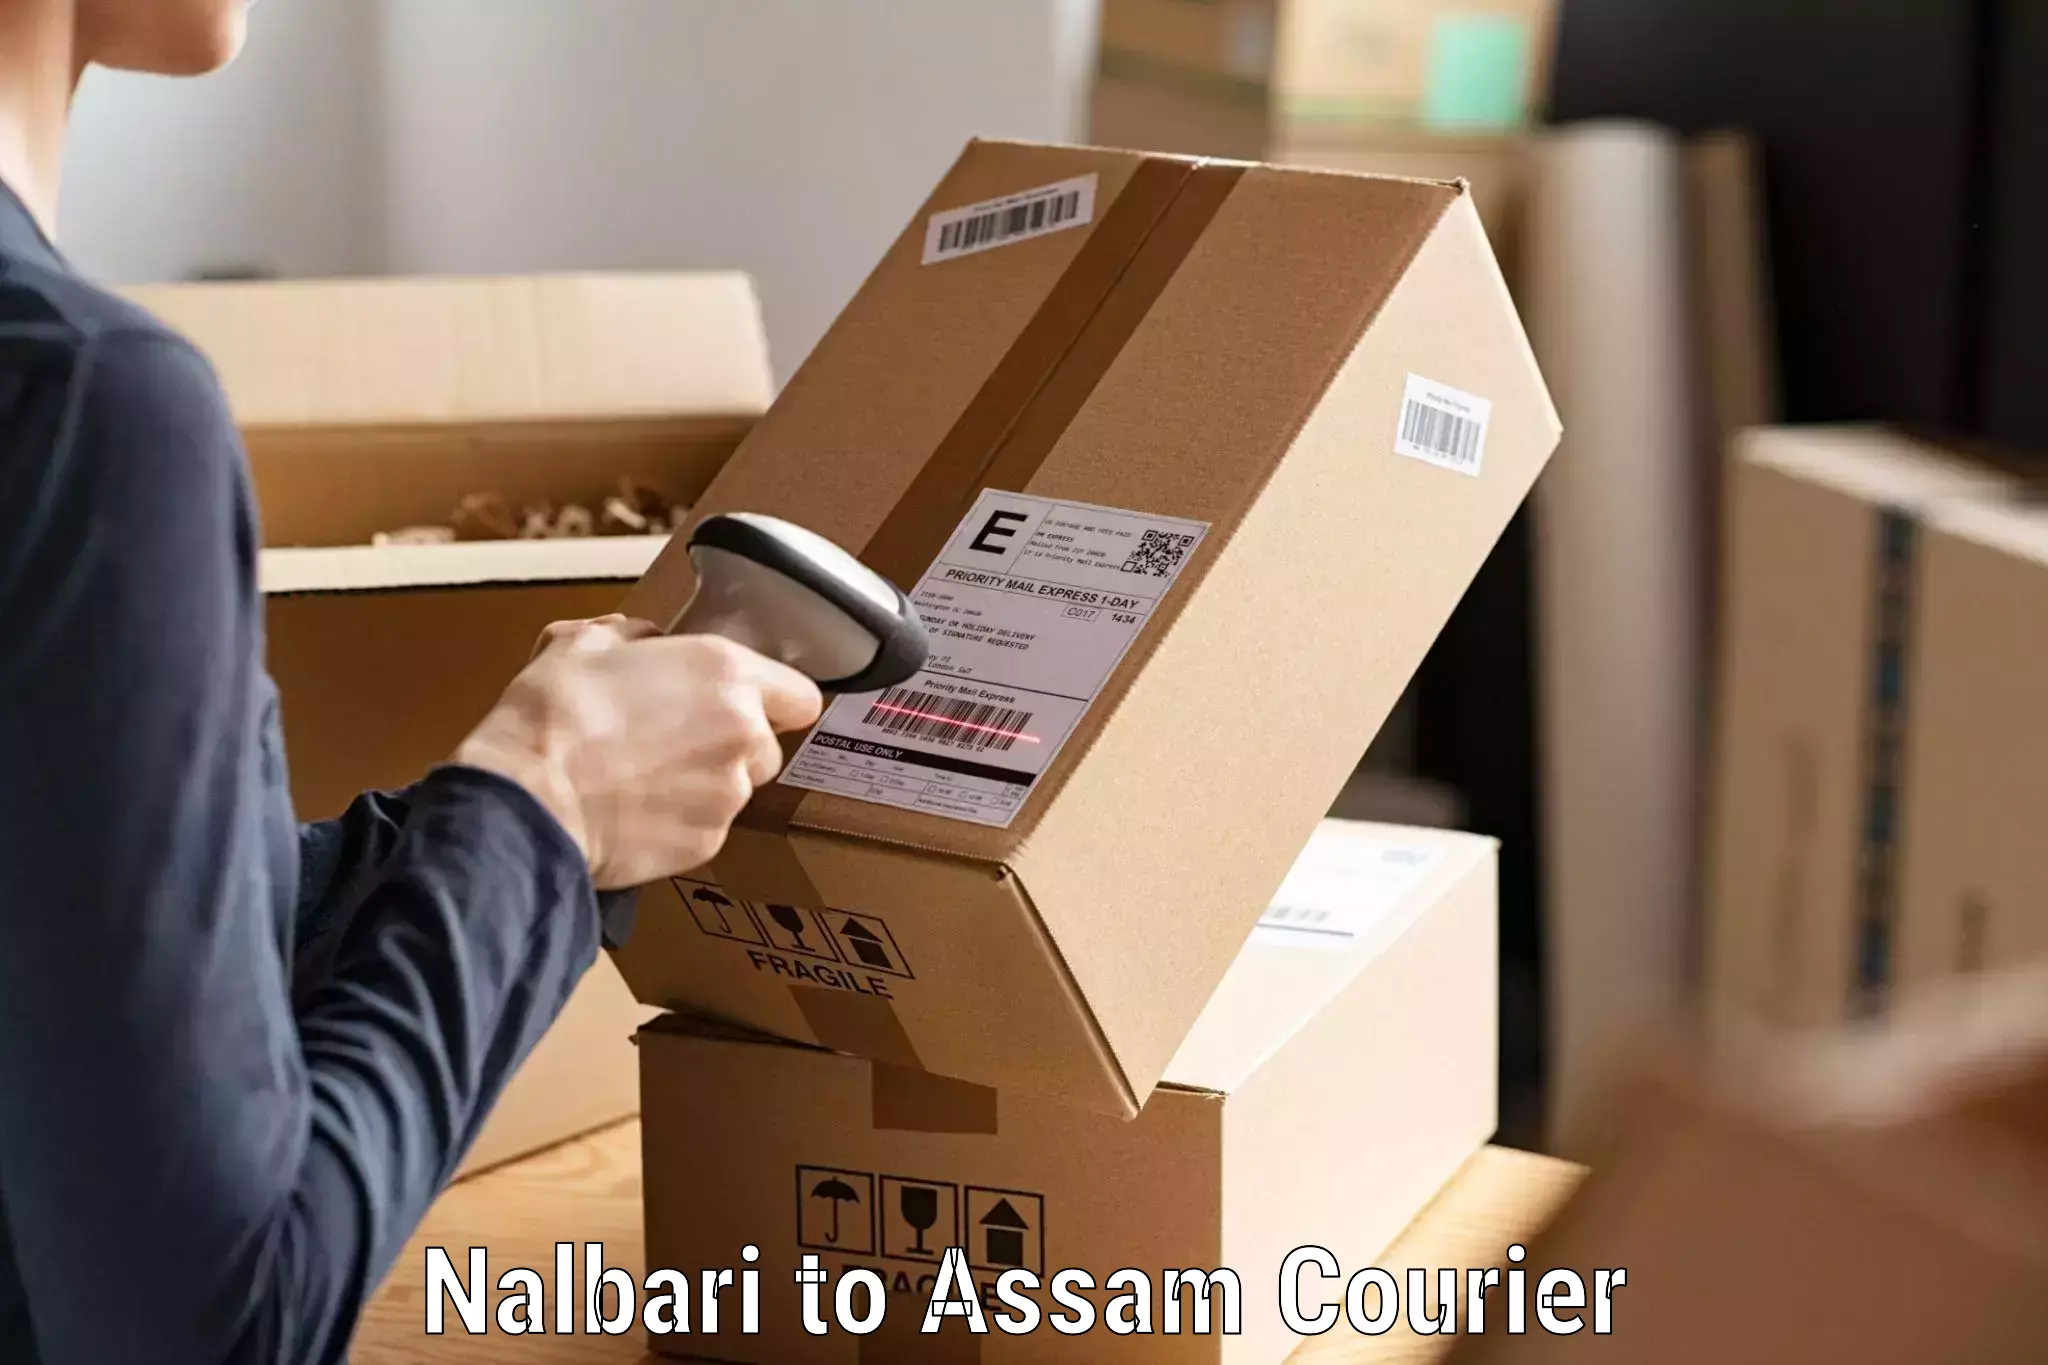 Courier service comparison Nalbari to Chabua